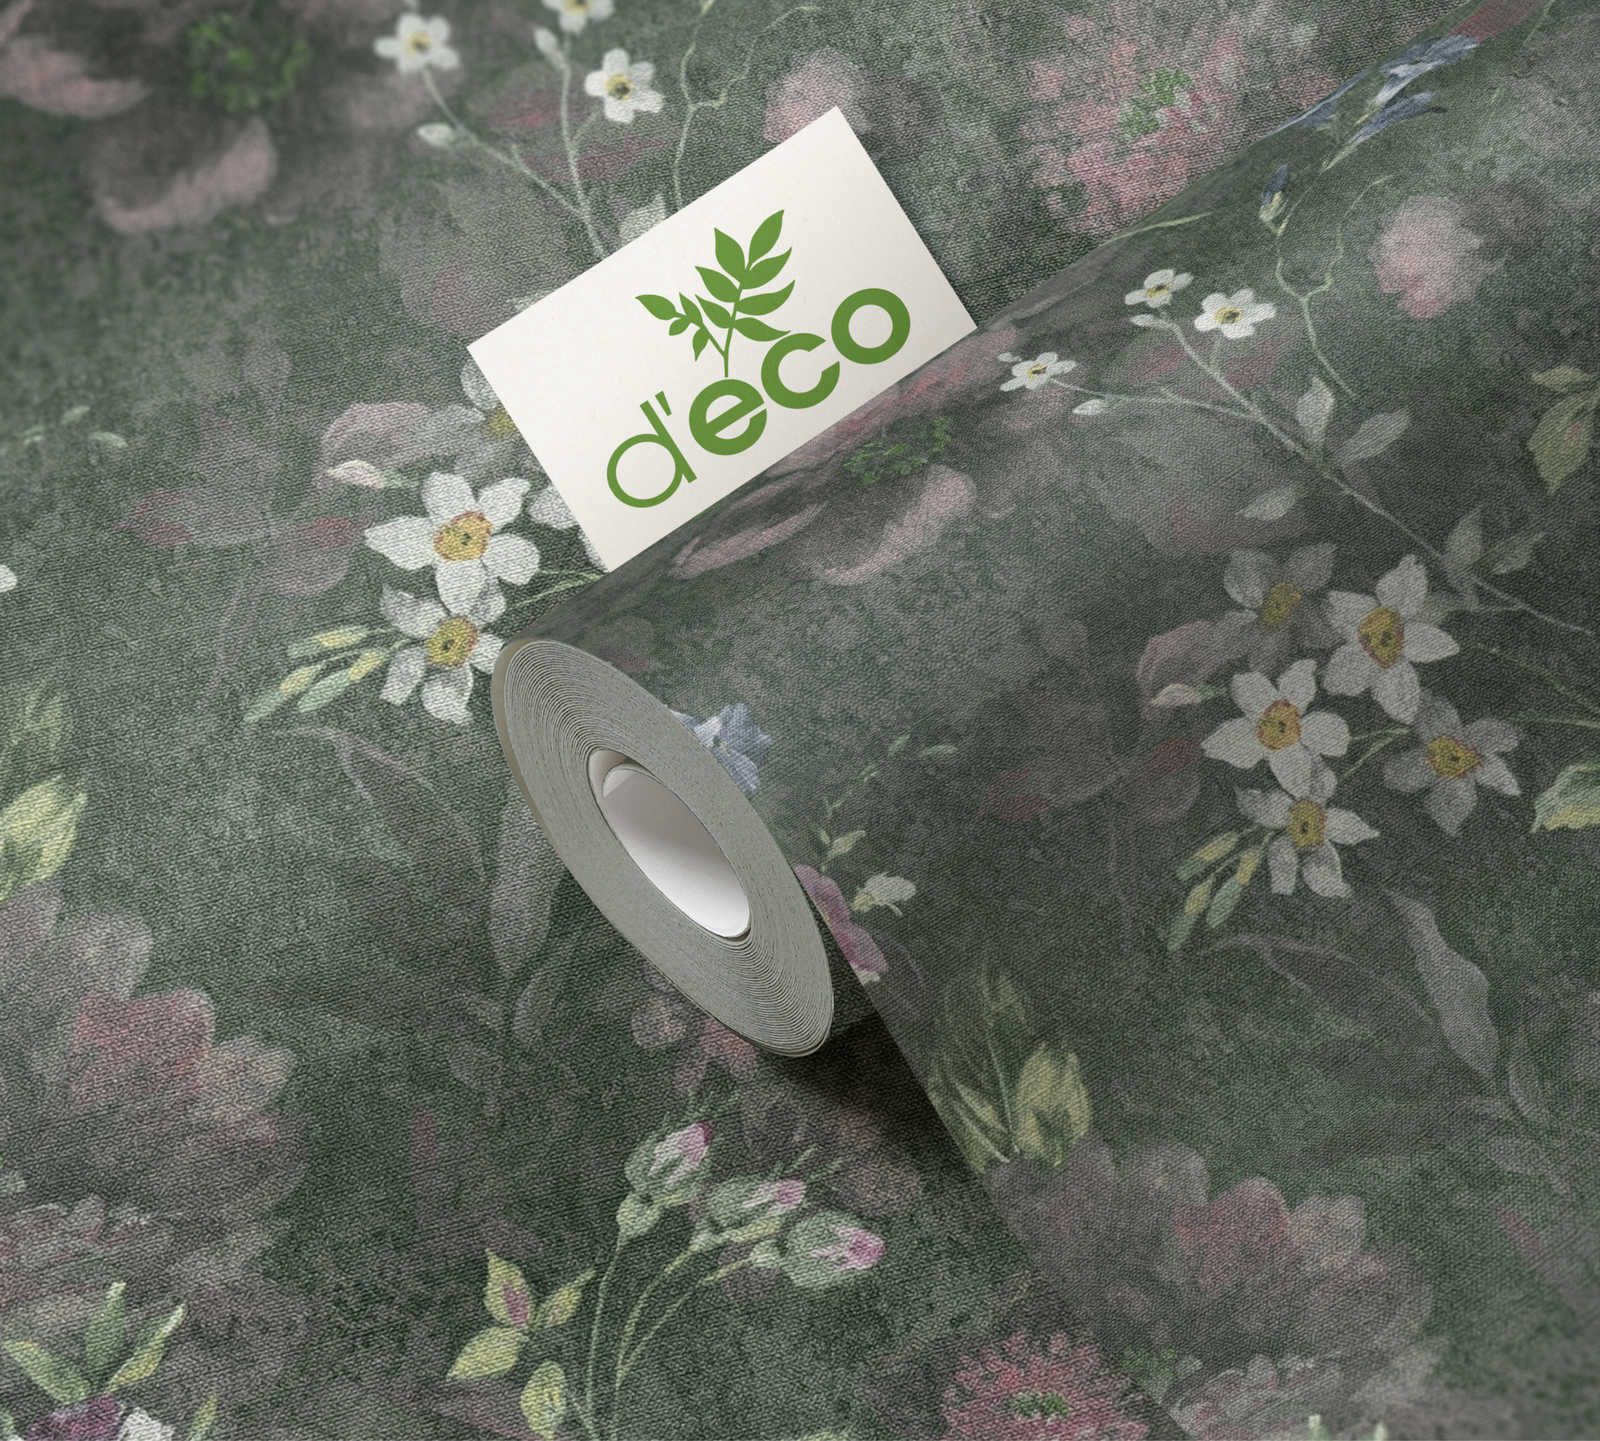             Vliestapete mit gemaltem Blumenmuster PVC-frei – Grün, Weiß, Rosa
        